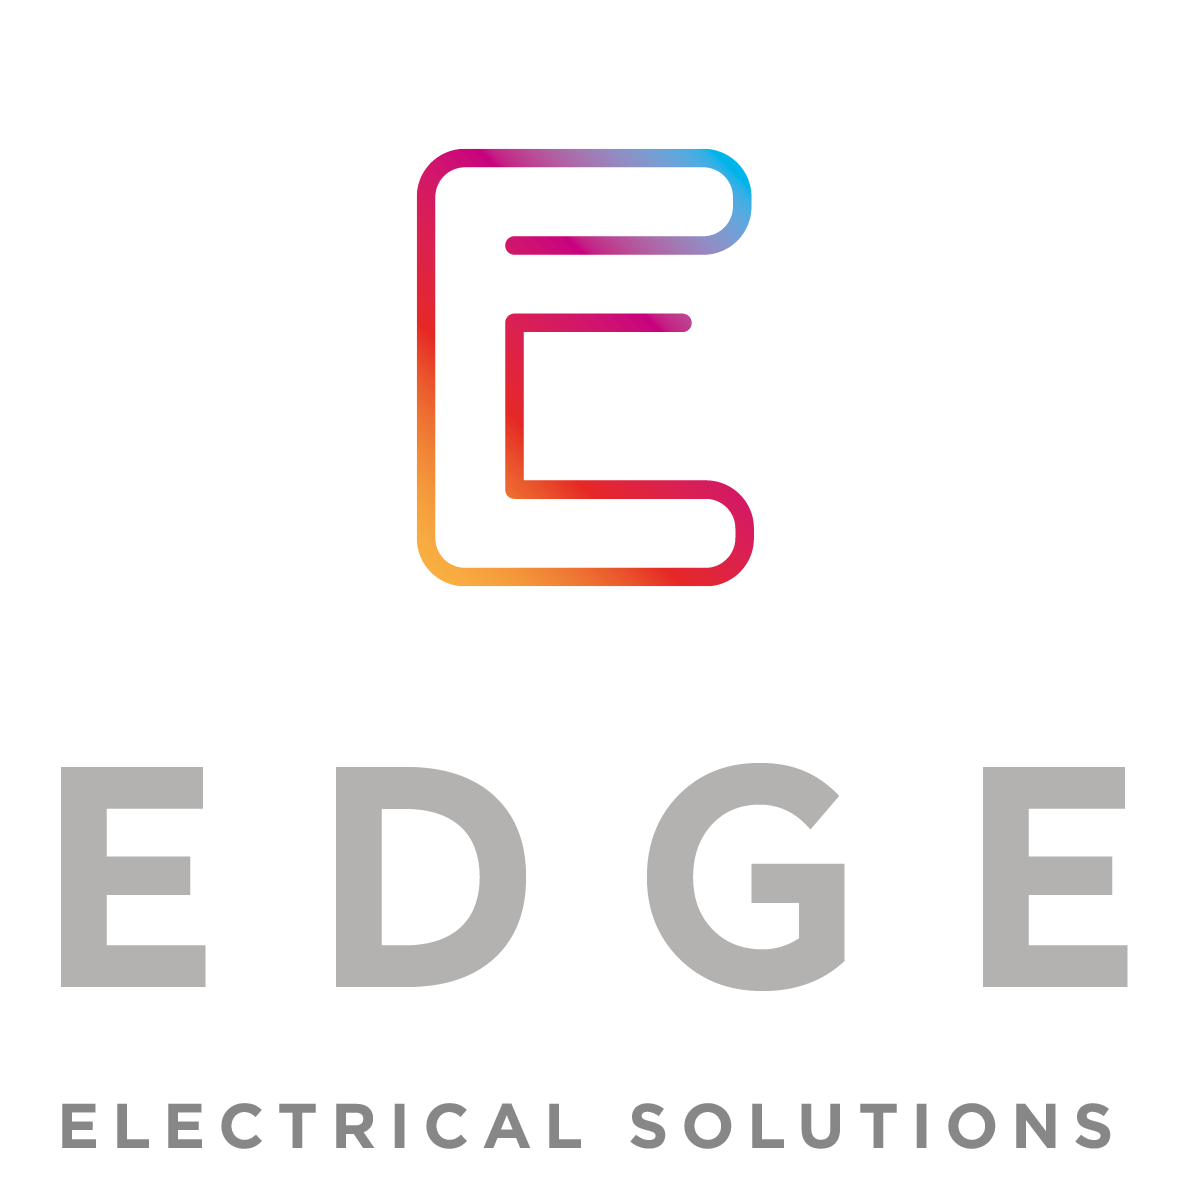 Edge proposed design